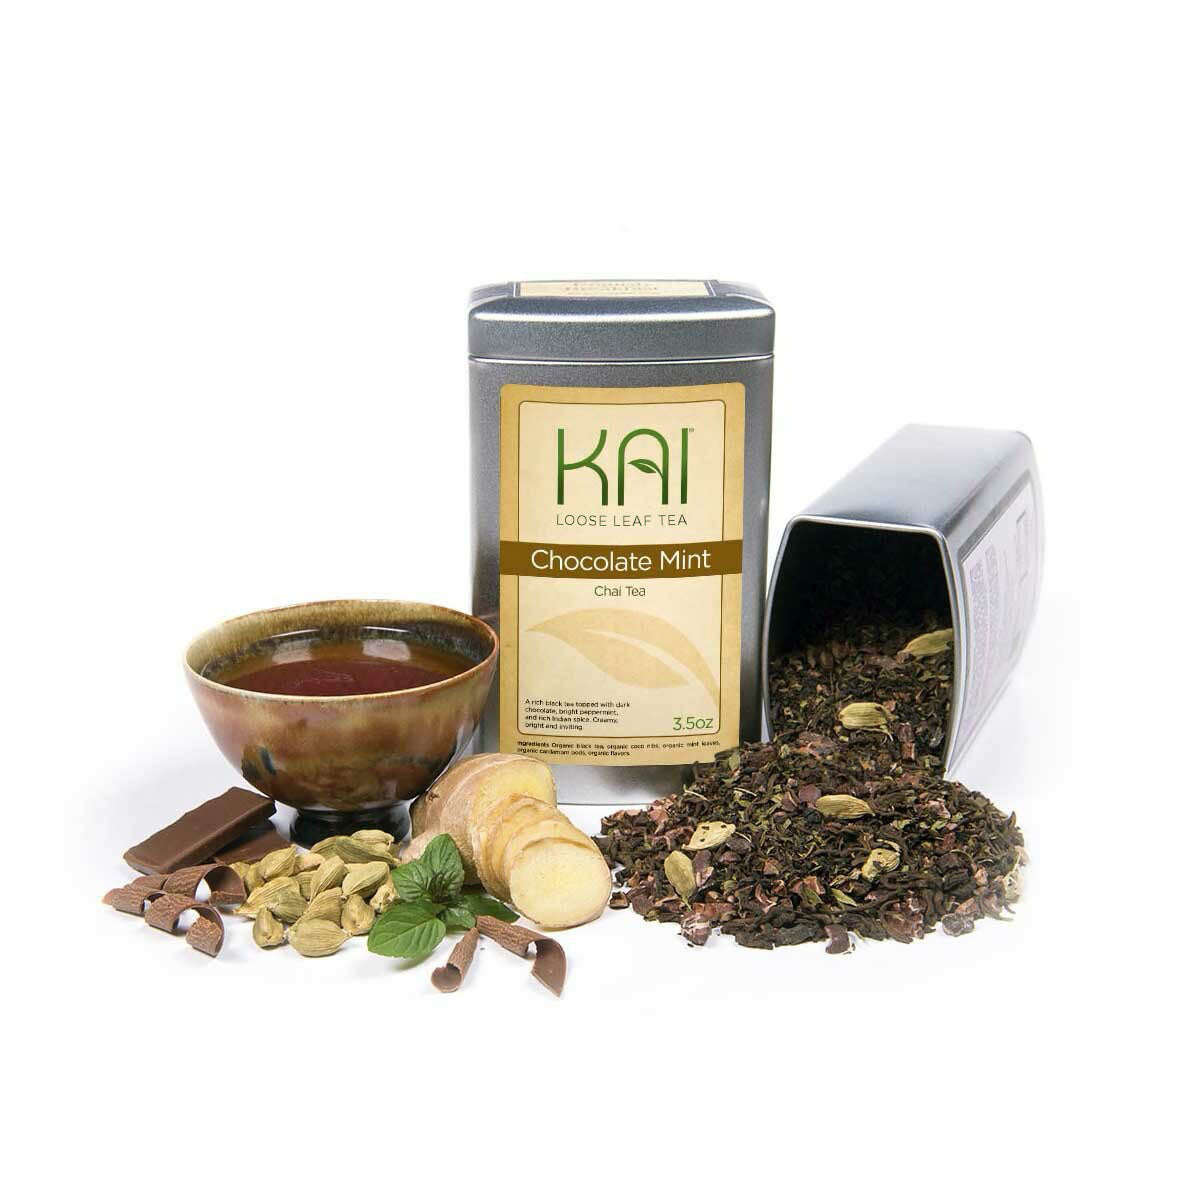 Kai Loose Leaf Tea - Chocolate Mint